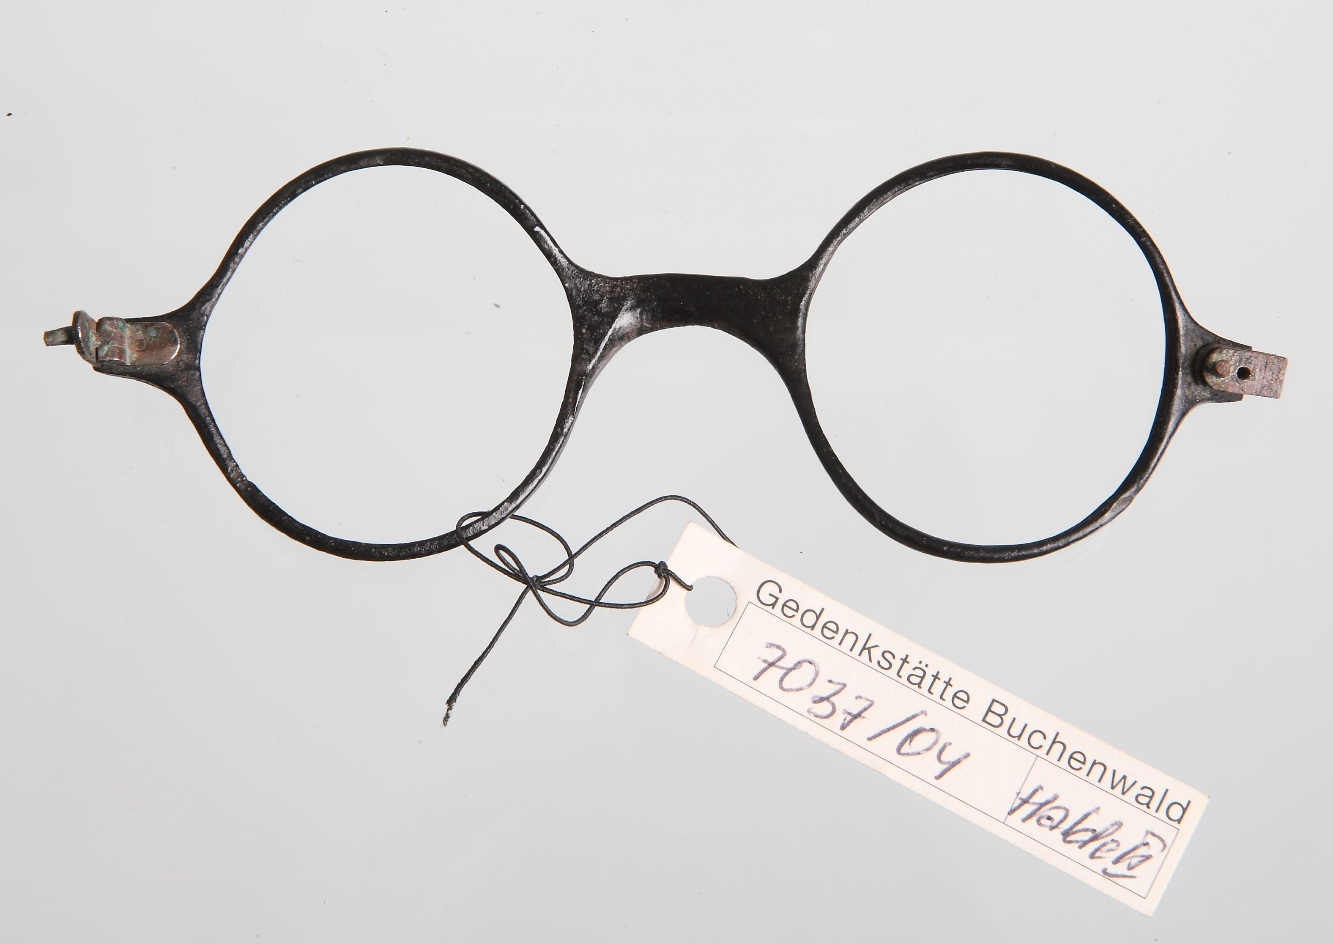 Zu sehen ist ein Brillengestell mit runden Fassungen. Es handelt sich um ein Fundstück aus dem Bildungsmaterial Fundstückkoffer.